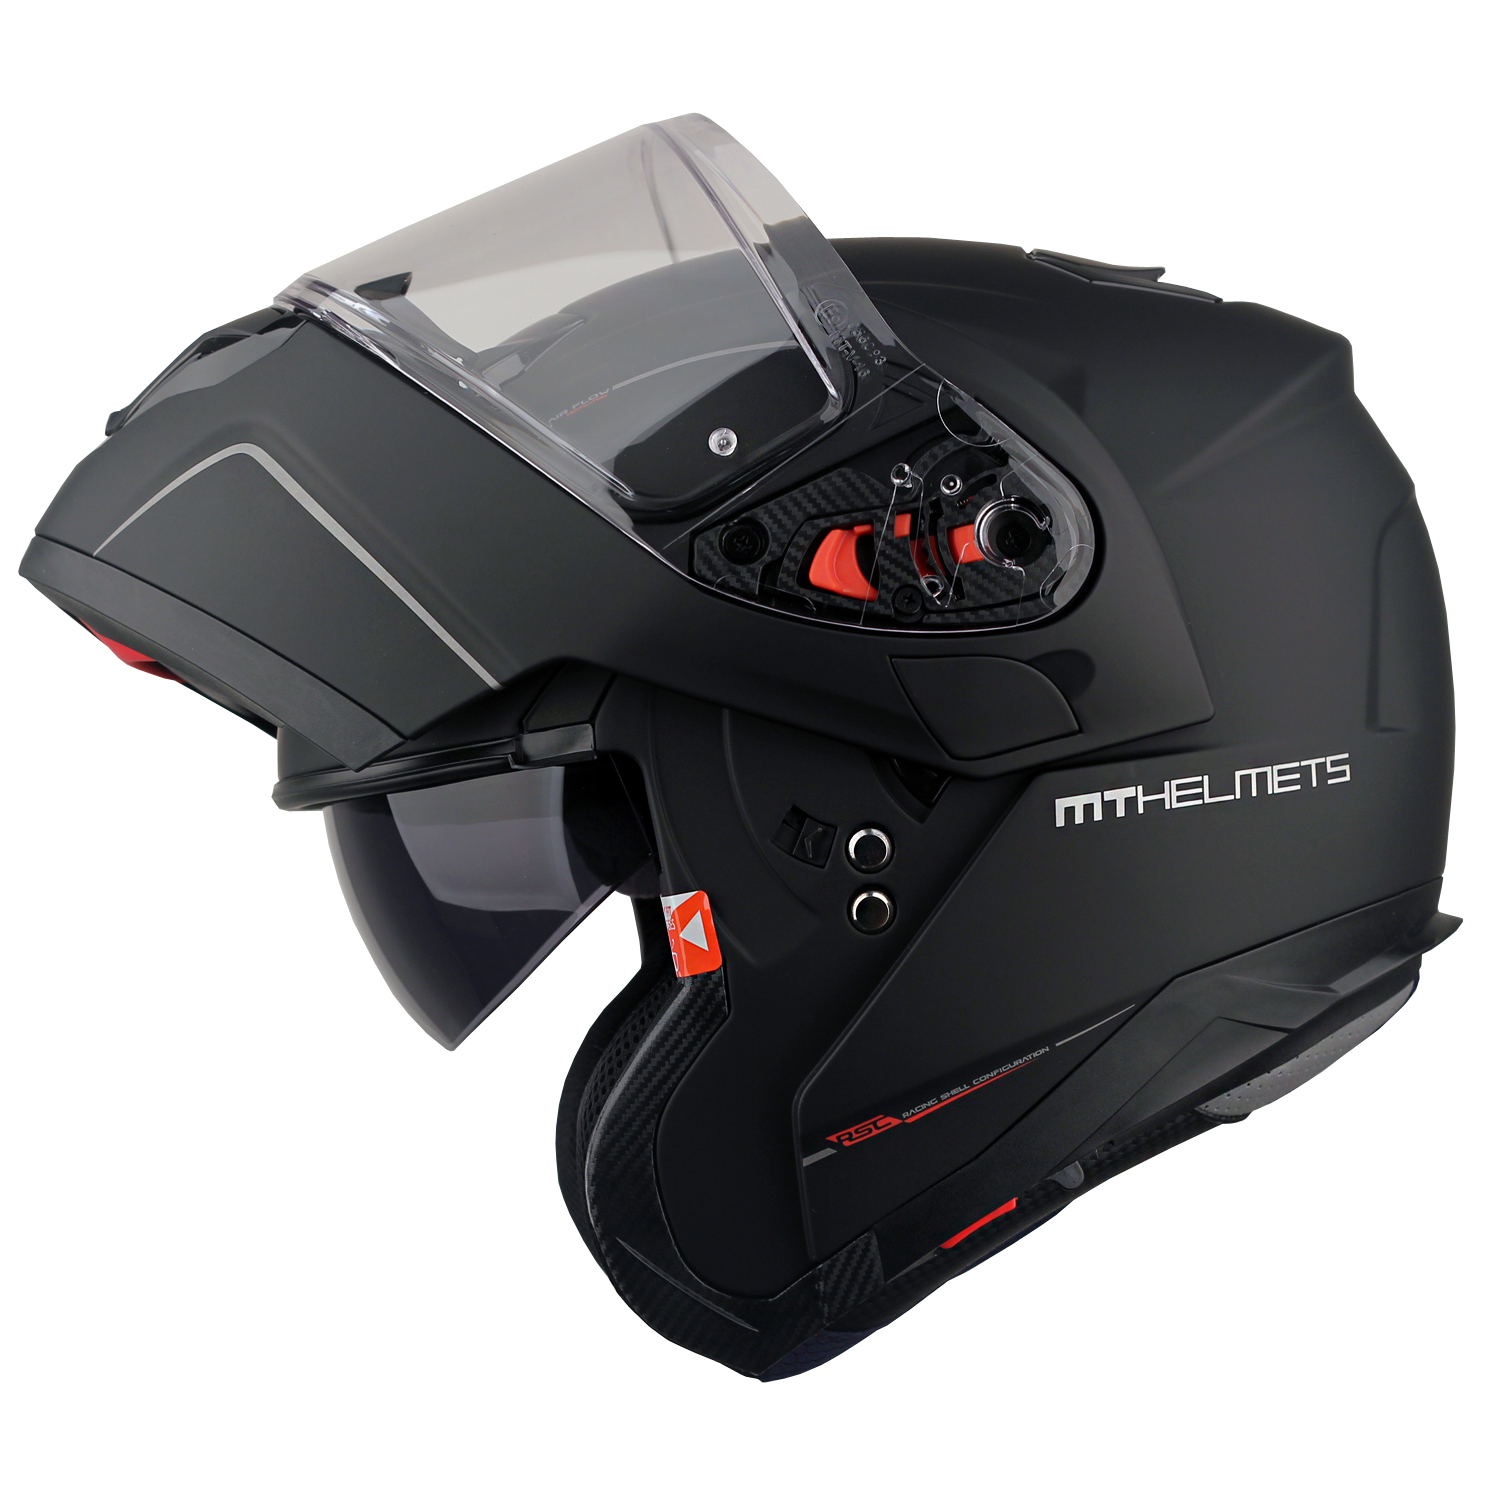 MT헬멧 ATOM(아톰) RACELINE EVO 시스템 헬멧 맷블랙 - 핀락 무상 증정/선바이저 내장형